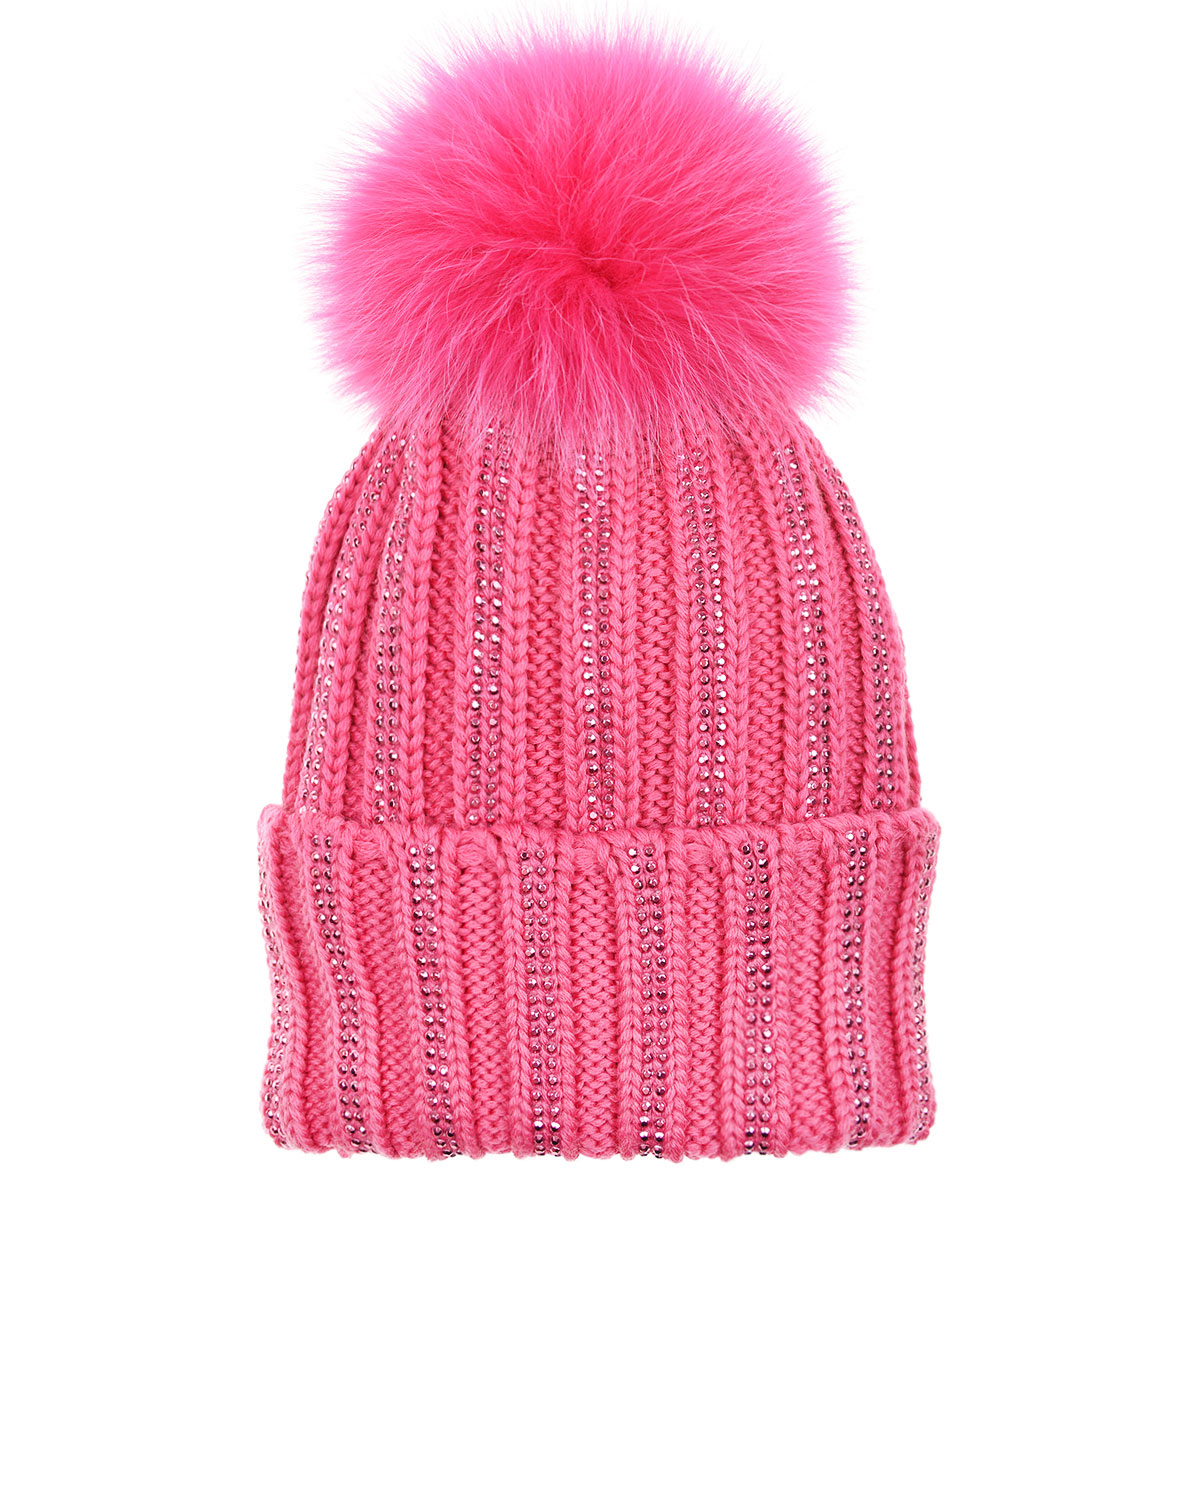 Шапка розовый цвет. Catya шапки. Розовая шапка. Шапка с помпонами для девочки розовая. Розовая шапка шерстяная.